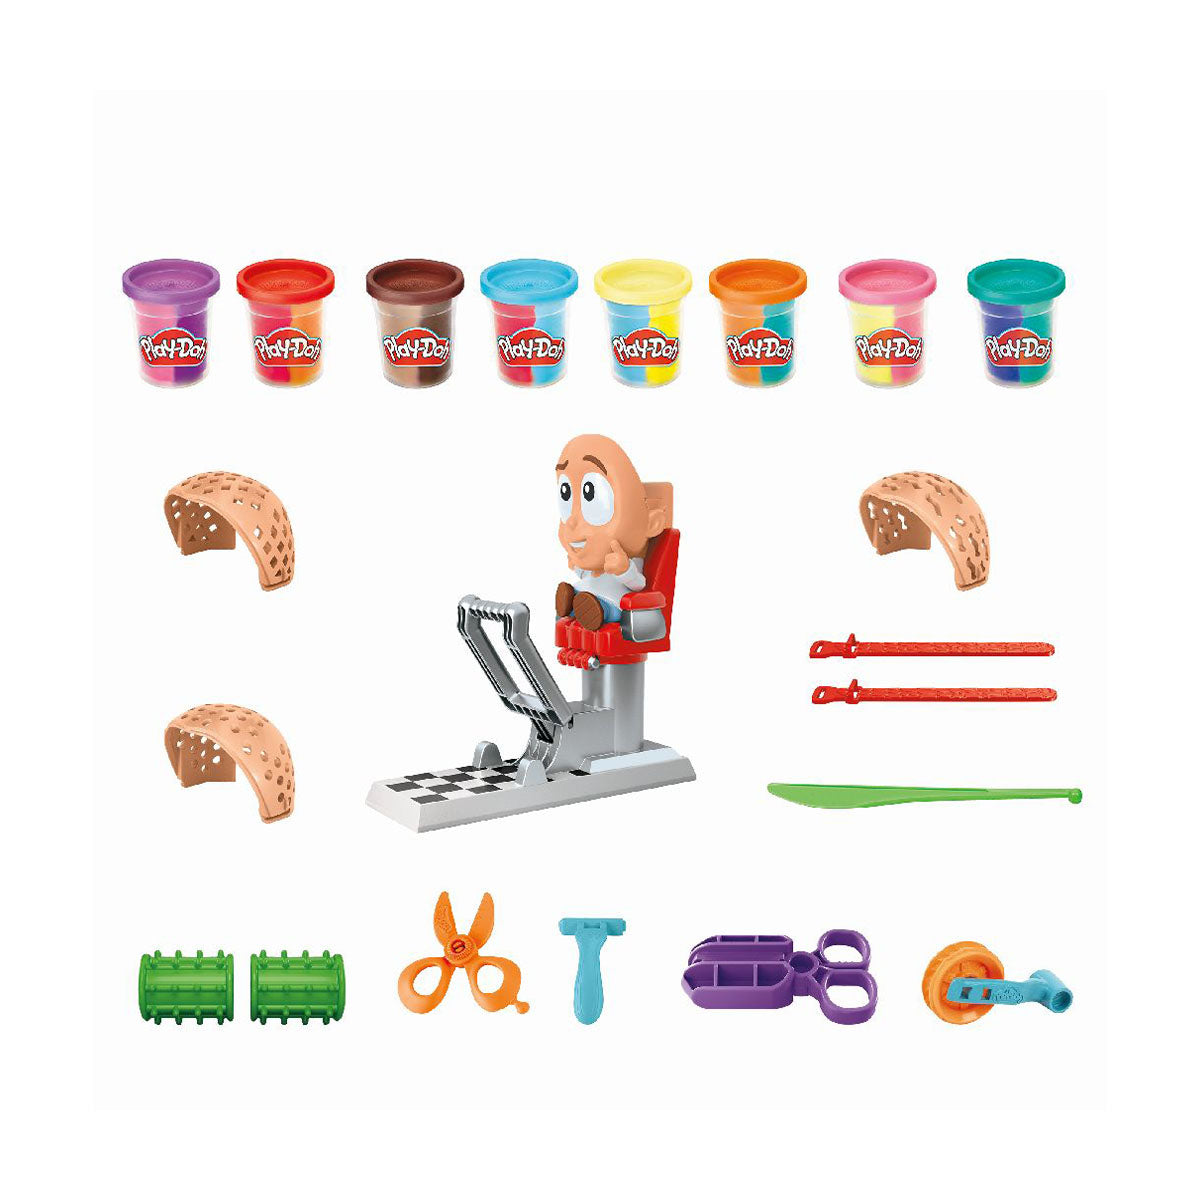 Lekker kliederen en creatief bezig zijn, welk kind houdt daar niet van?! Met deze super stylist set van het merk Play-Doh is dat geen probleem!  In de Play-Doh kapsalon ben jij de Super Stylist! Hier maak je de meest kleurrijke creatieve kapsels. VanZus